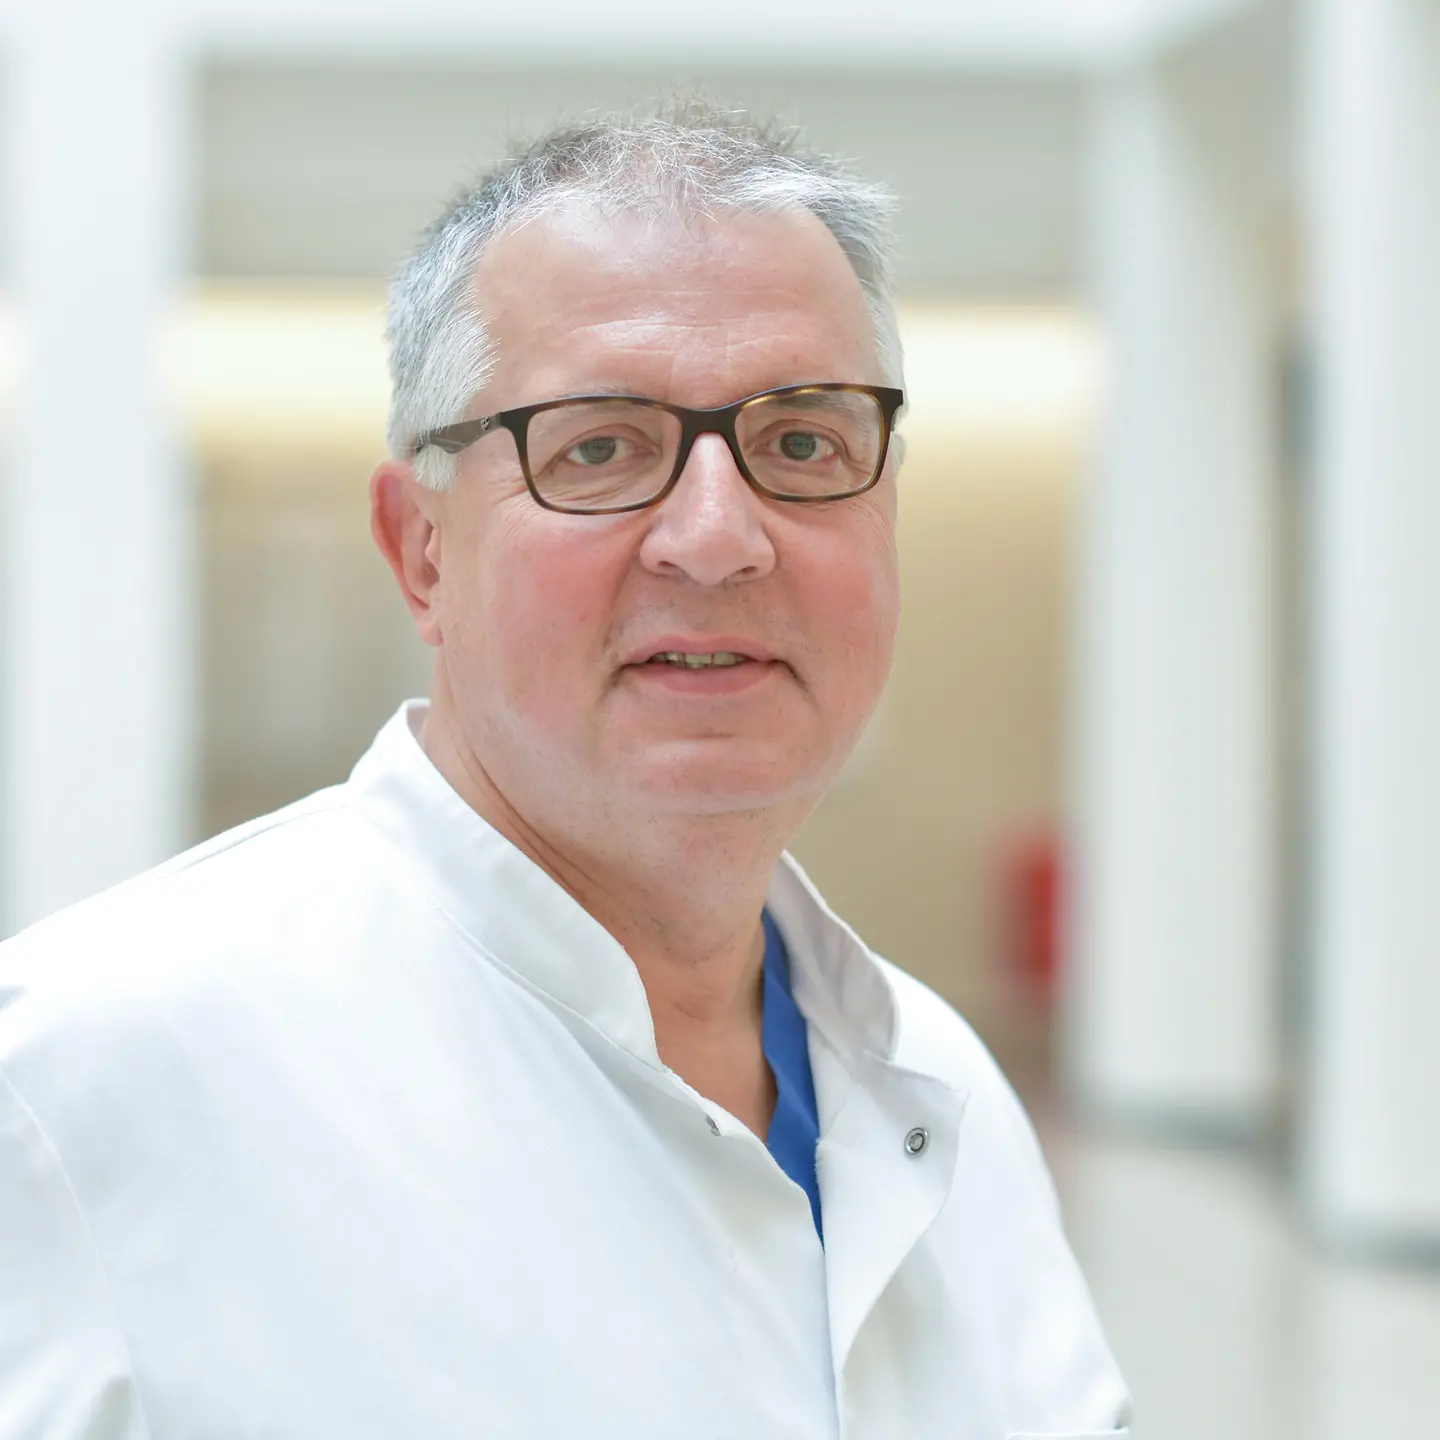 Portraitfoto von Professor Doktor Friedrich Köhler, Leiter des Arbeitsbereichs Kardiovaskuläre Telemedizin an der Charité